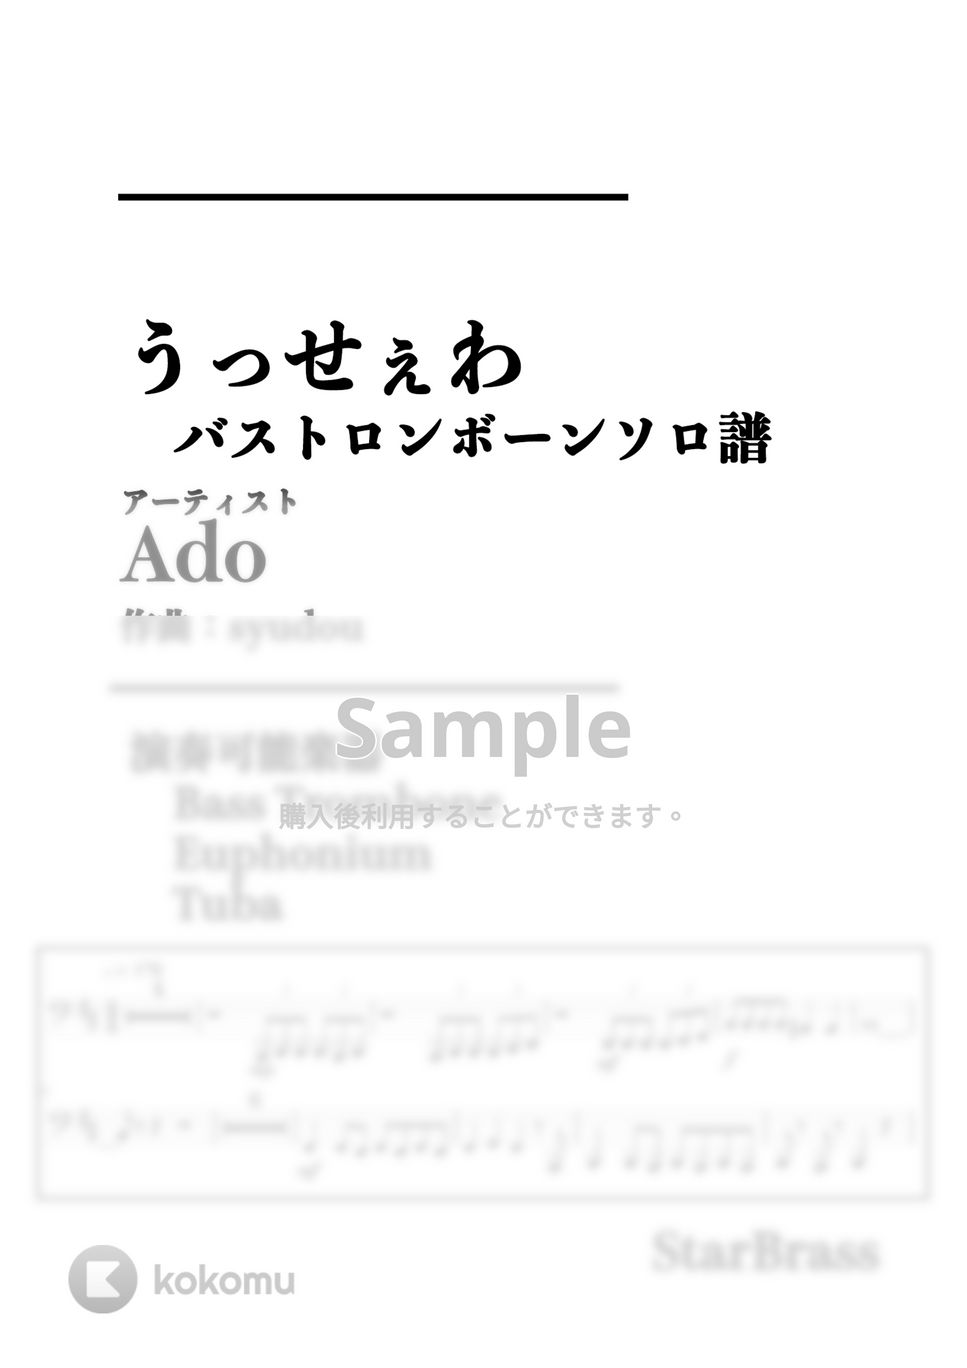 Ado - うっせぇわ (-Bass Trombone Solo- 原キー) by Creampuff